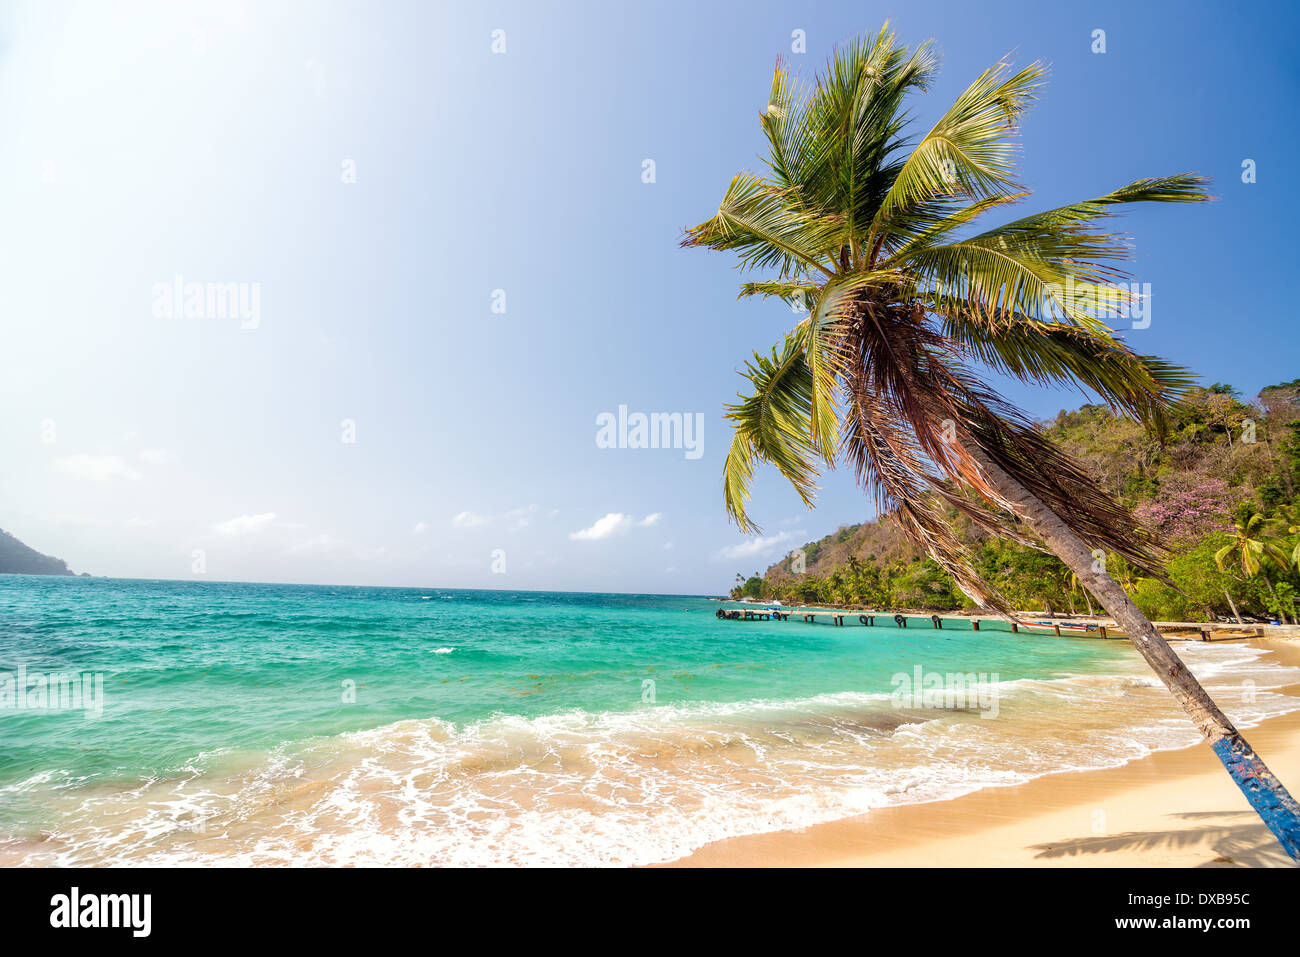 Playa de arena blanca y hermosa palmera en la Miel, cerca de Panamá, Colombia Capurgana Foto de stock